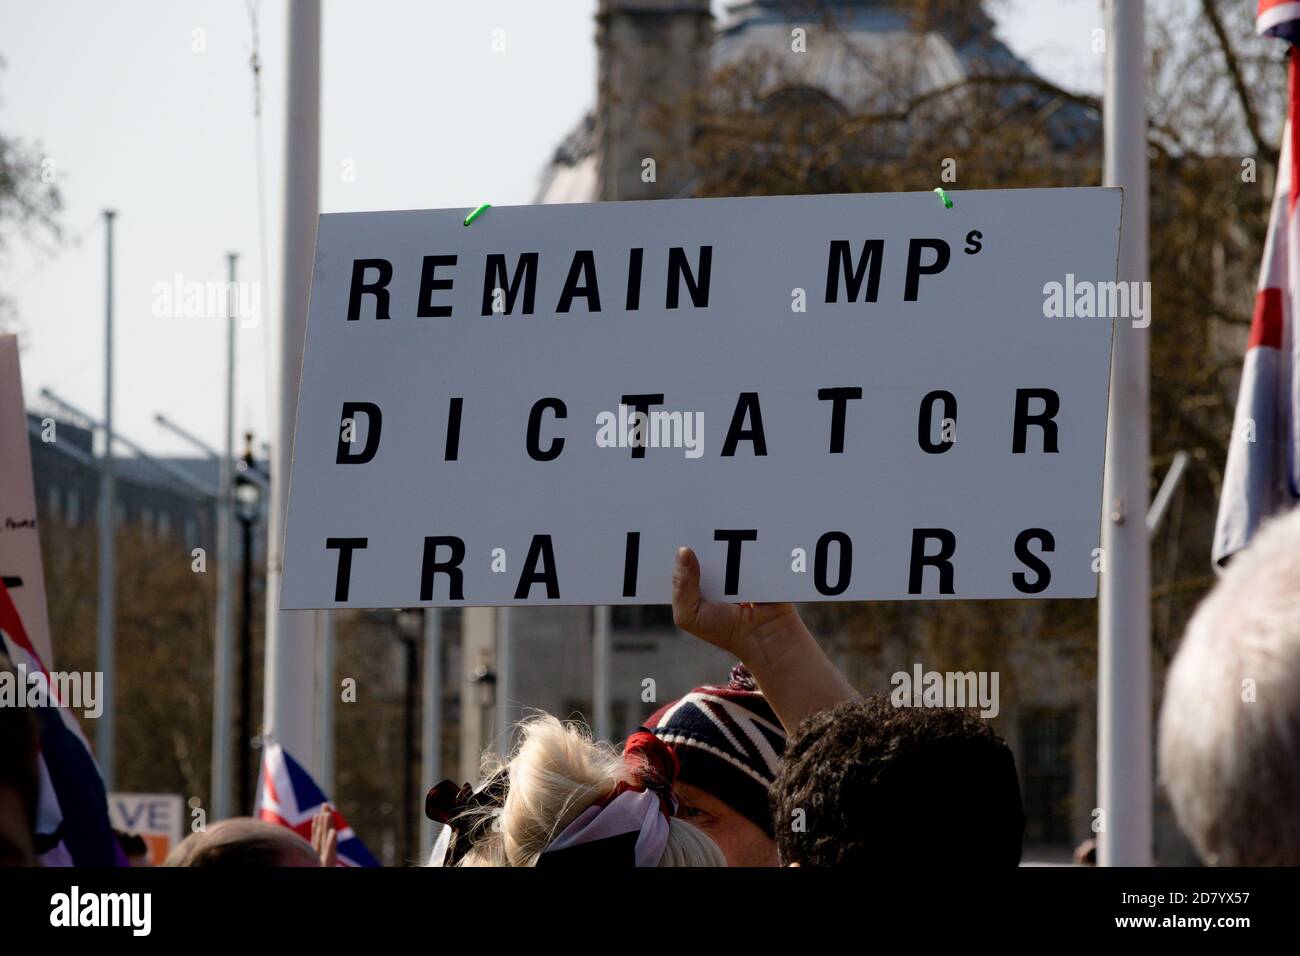 Londra, Regno Unito, 29 marzo 2019:- manifestanti pro Brexit al di fuori del Parlamento britannico che chiedono una Brexit senza accordo che lasci le condizioni dell’OMC Foto Stock